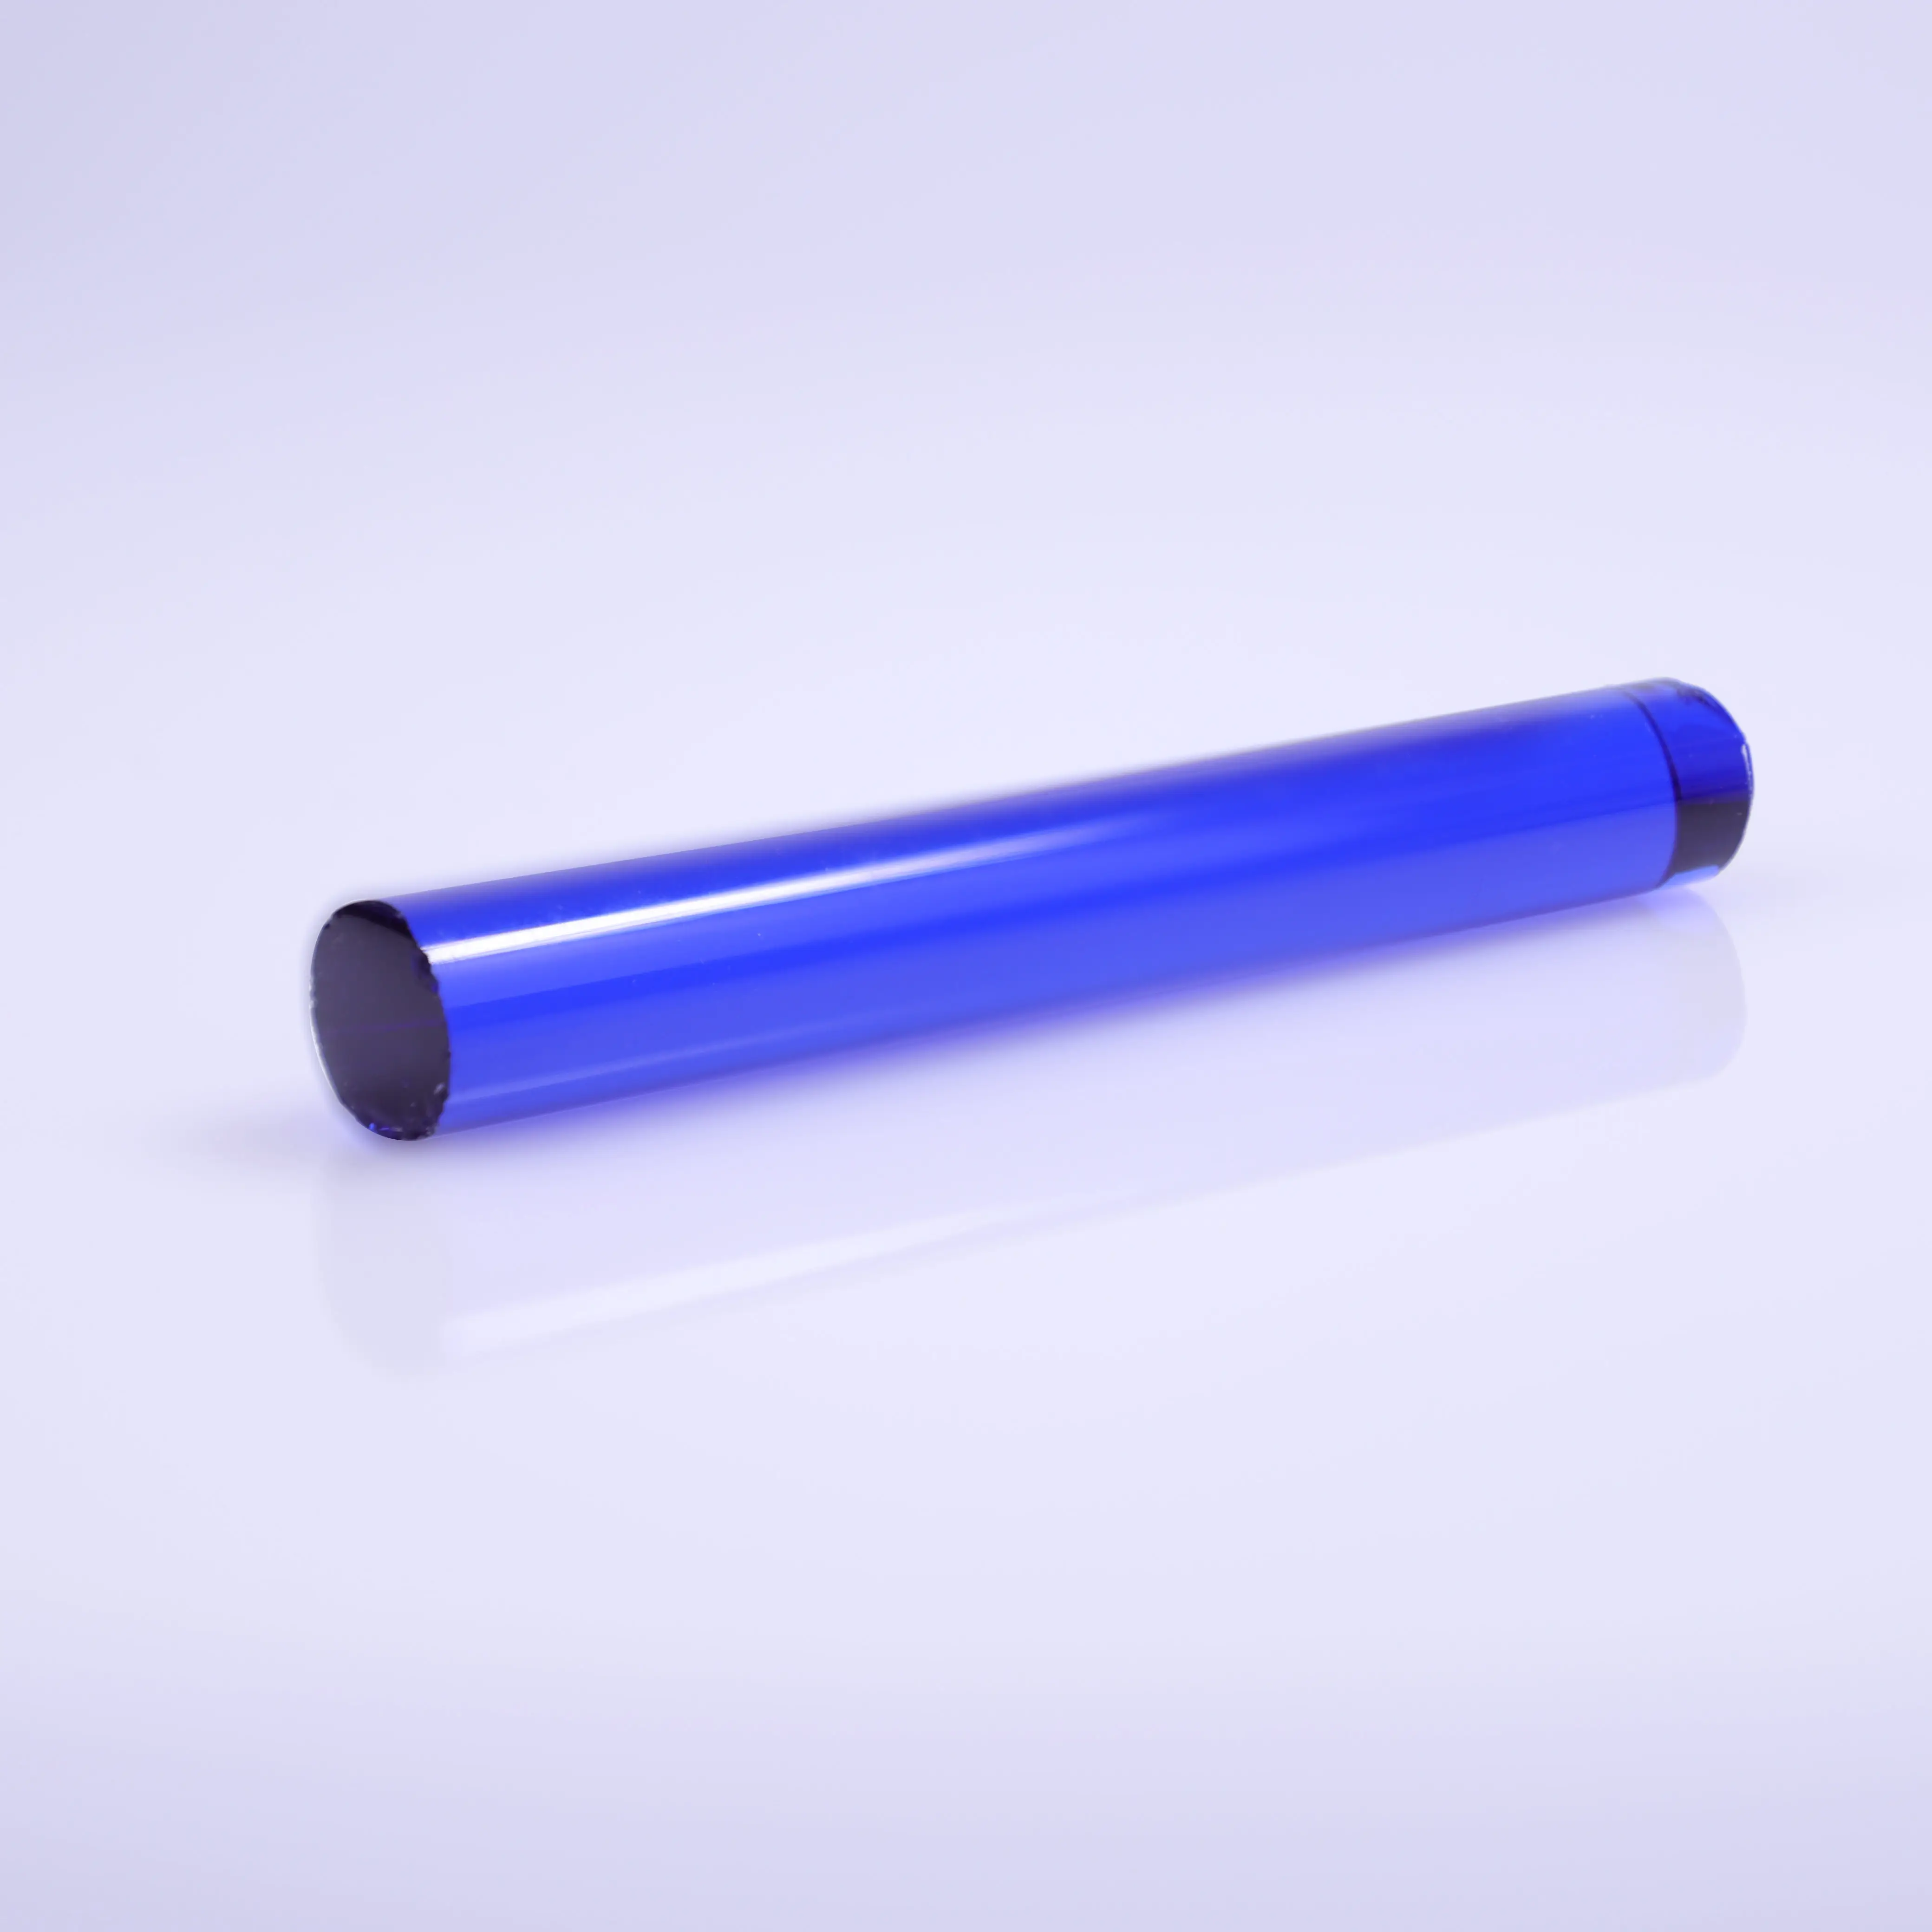 Barre de verre bleue en Fiber Borosilicate, 7Mm, tube coloré en verre de Murano massif, prix d'usine